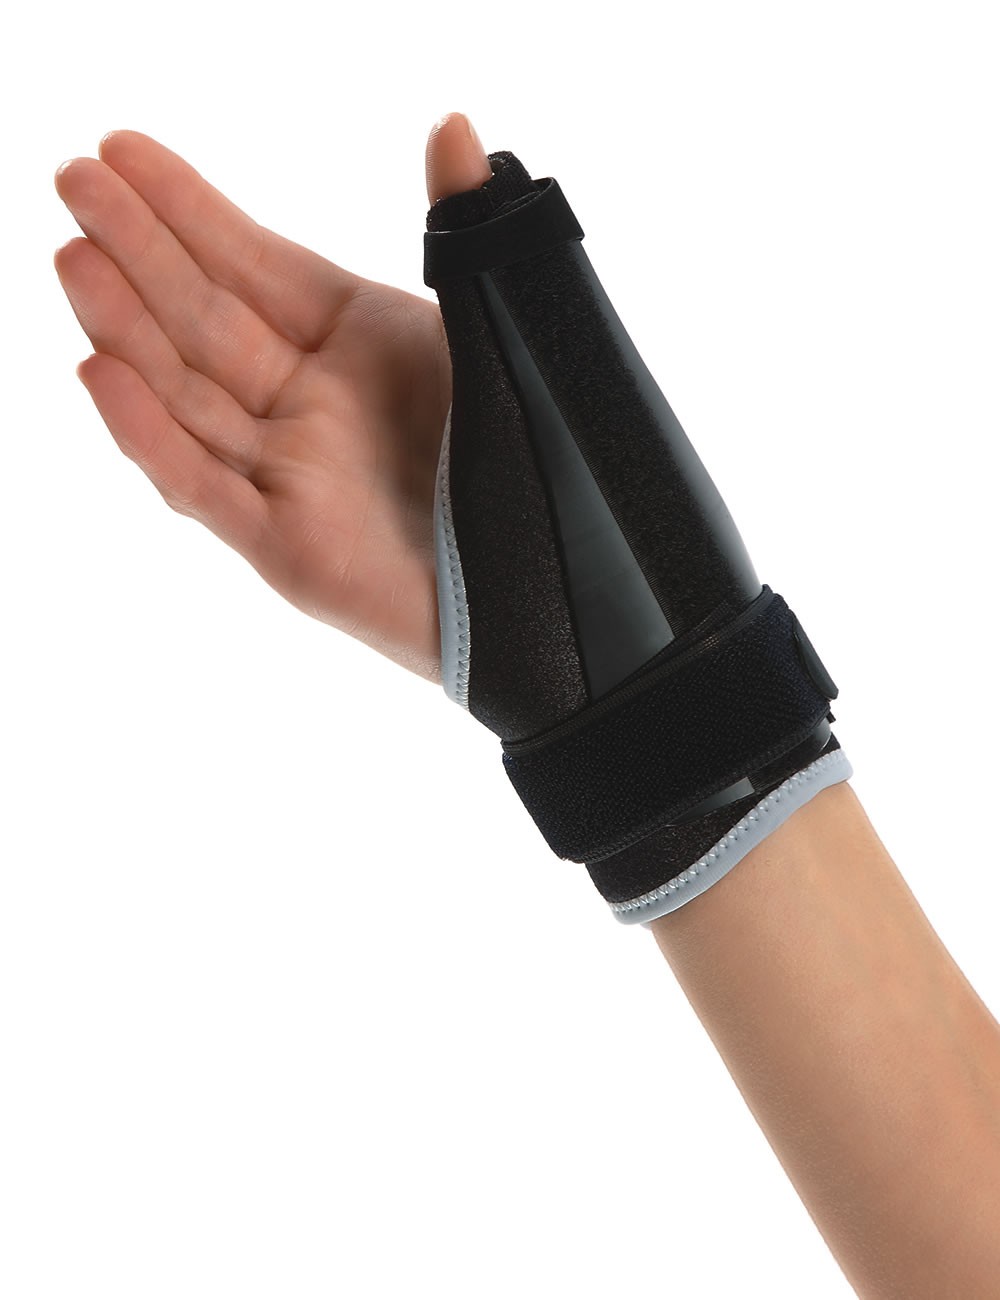 PK04 - Wrist brace 1st ray